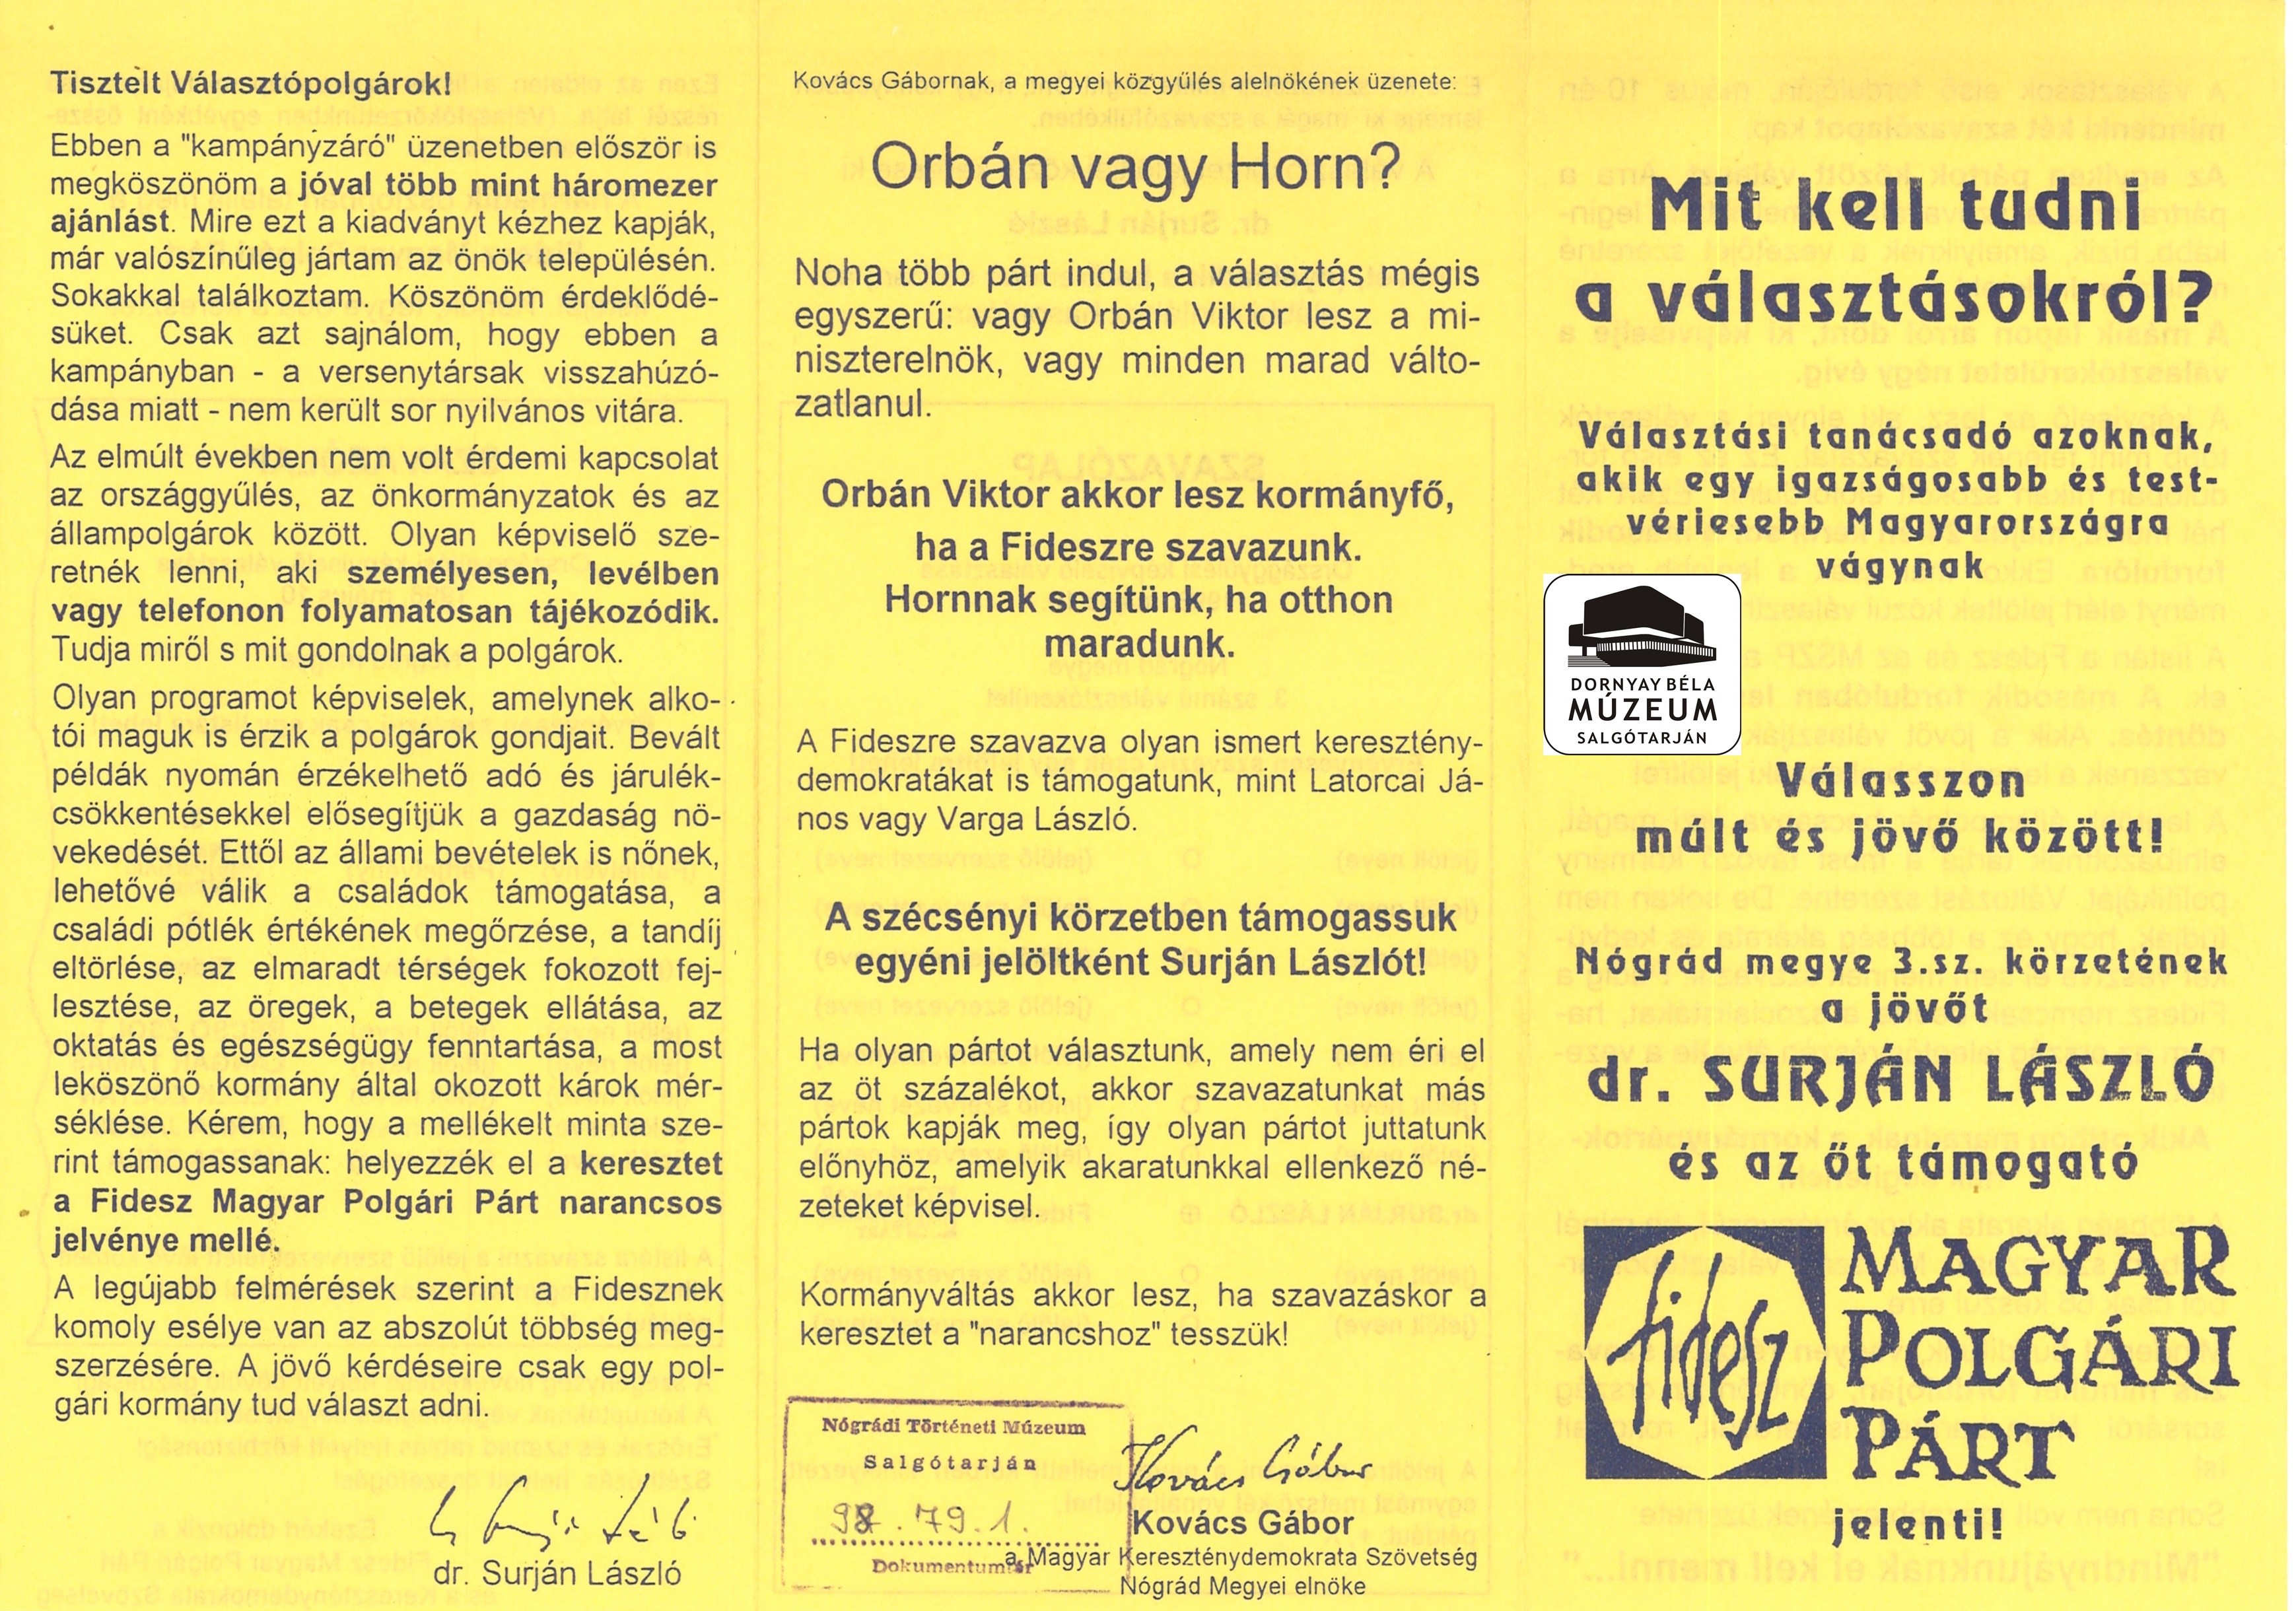 Mit kell tudni a választásokról – Fidesz tájékoztatója (Dornyay Béla Múzeum, Salgótarján CC BY-NC-SA)